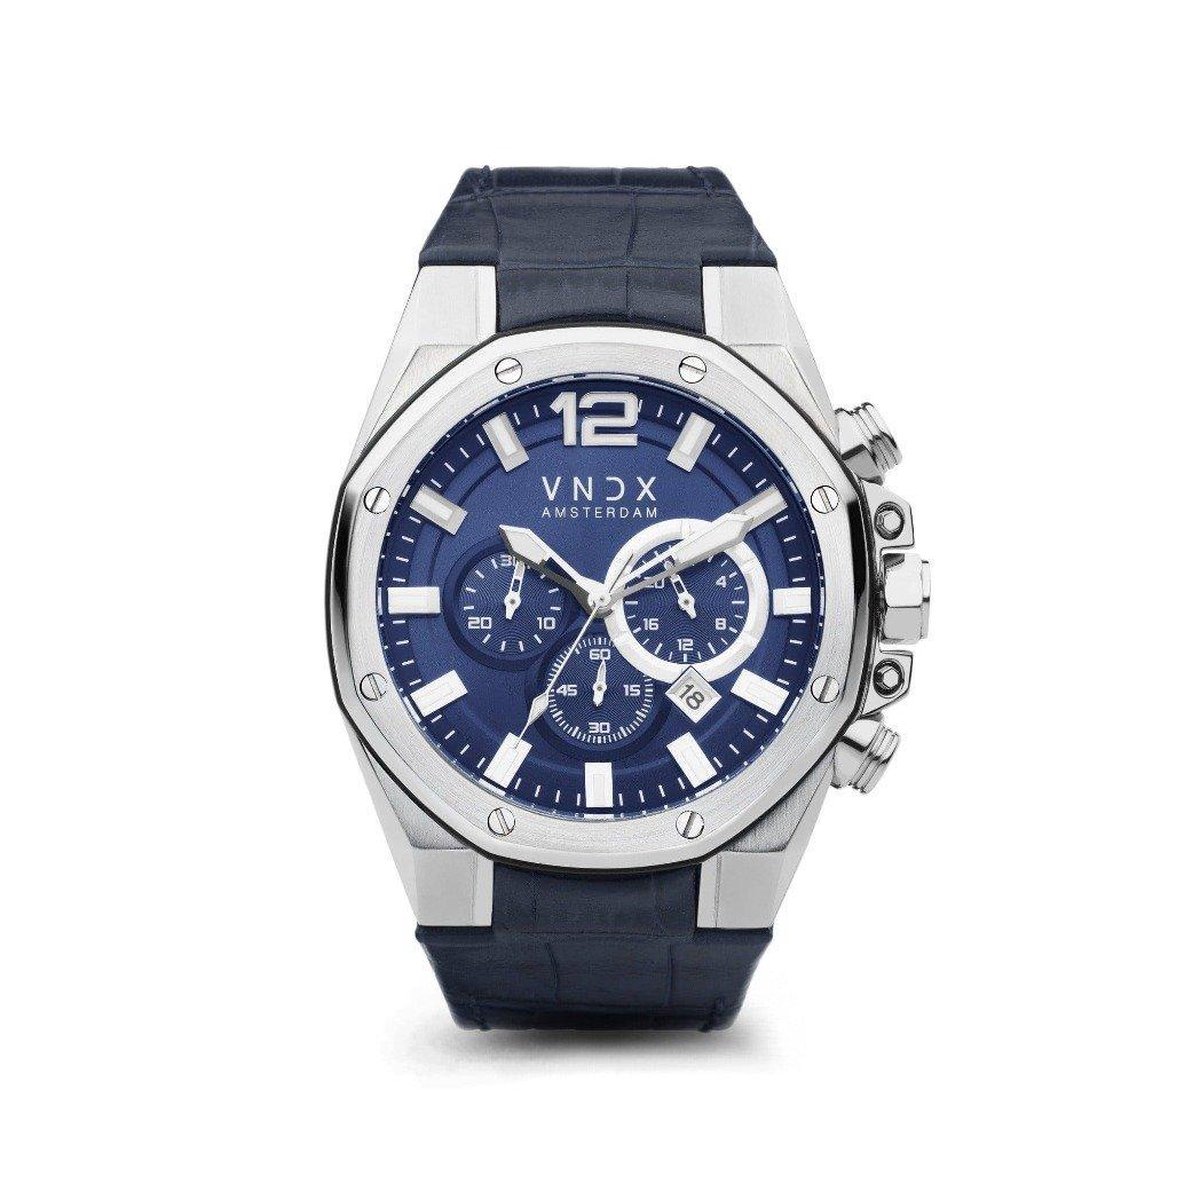 VNDX Amsterdam - Horloges voor mannen - Wise Man Blauw